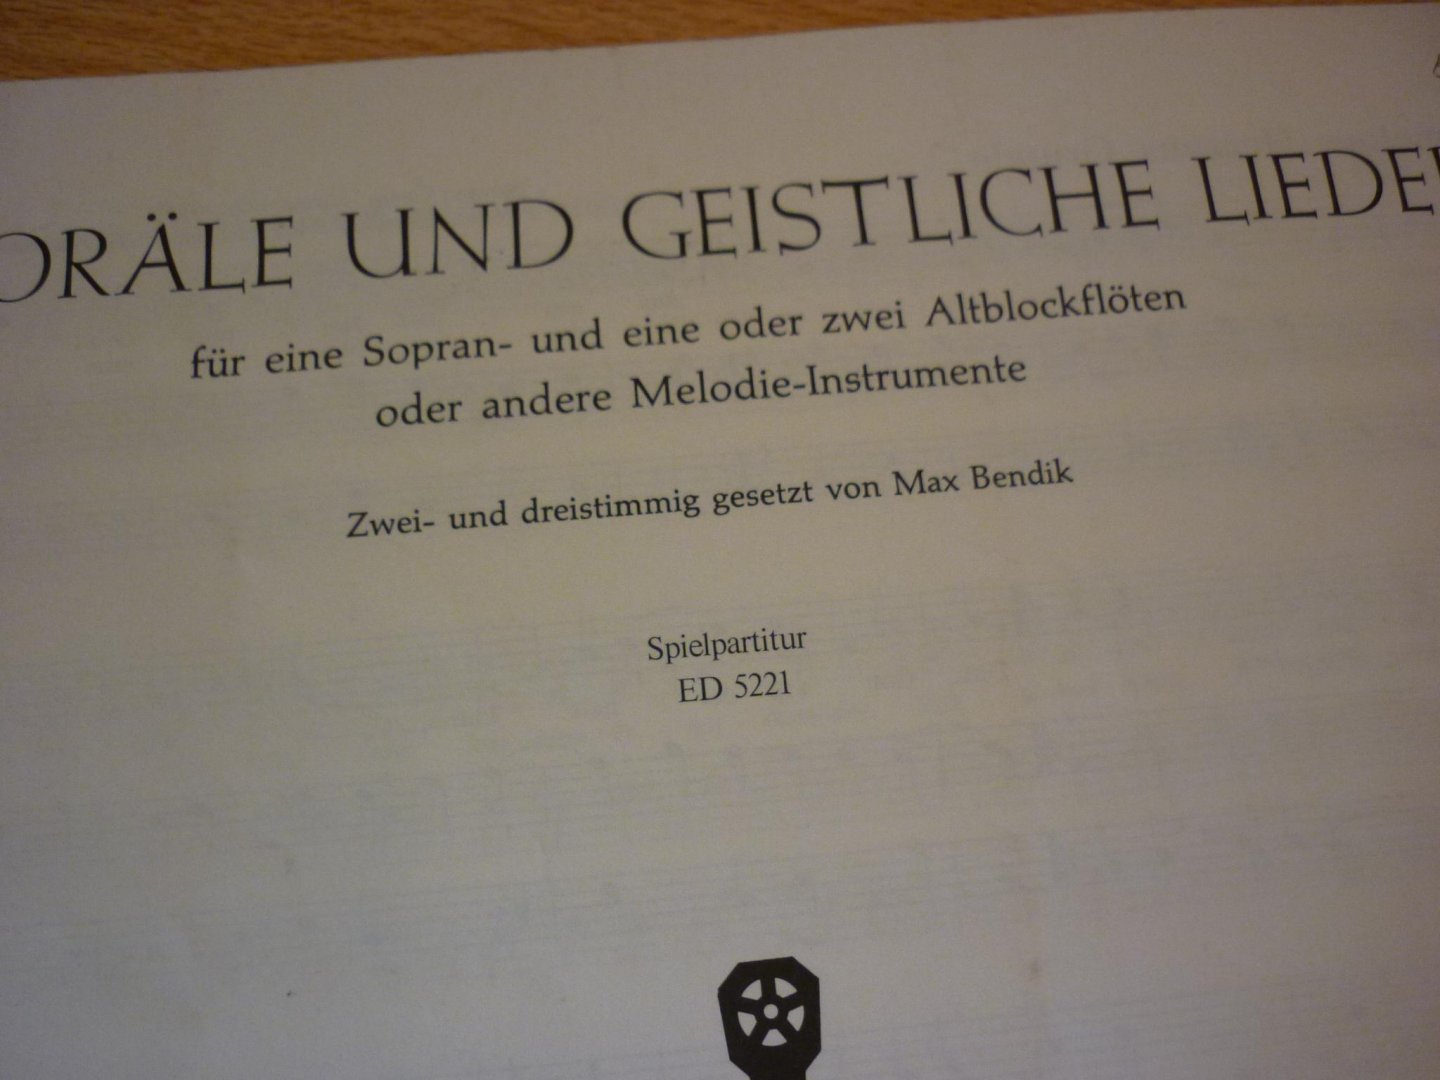 Max Bendik - Chorale und Geistliche Lieder  -  Fur Sopran- und 1 oder 2 Altblockfloten. Zwei-und dreistimmig gesetzt